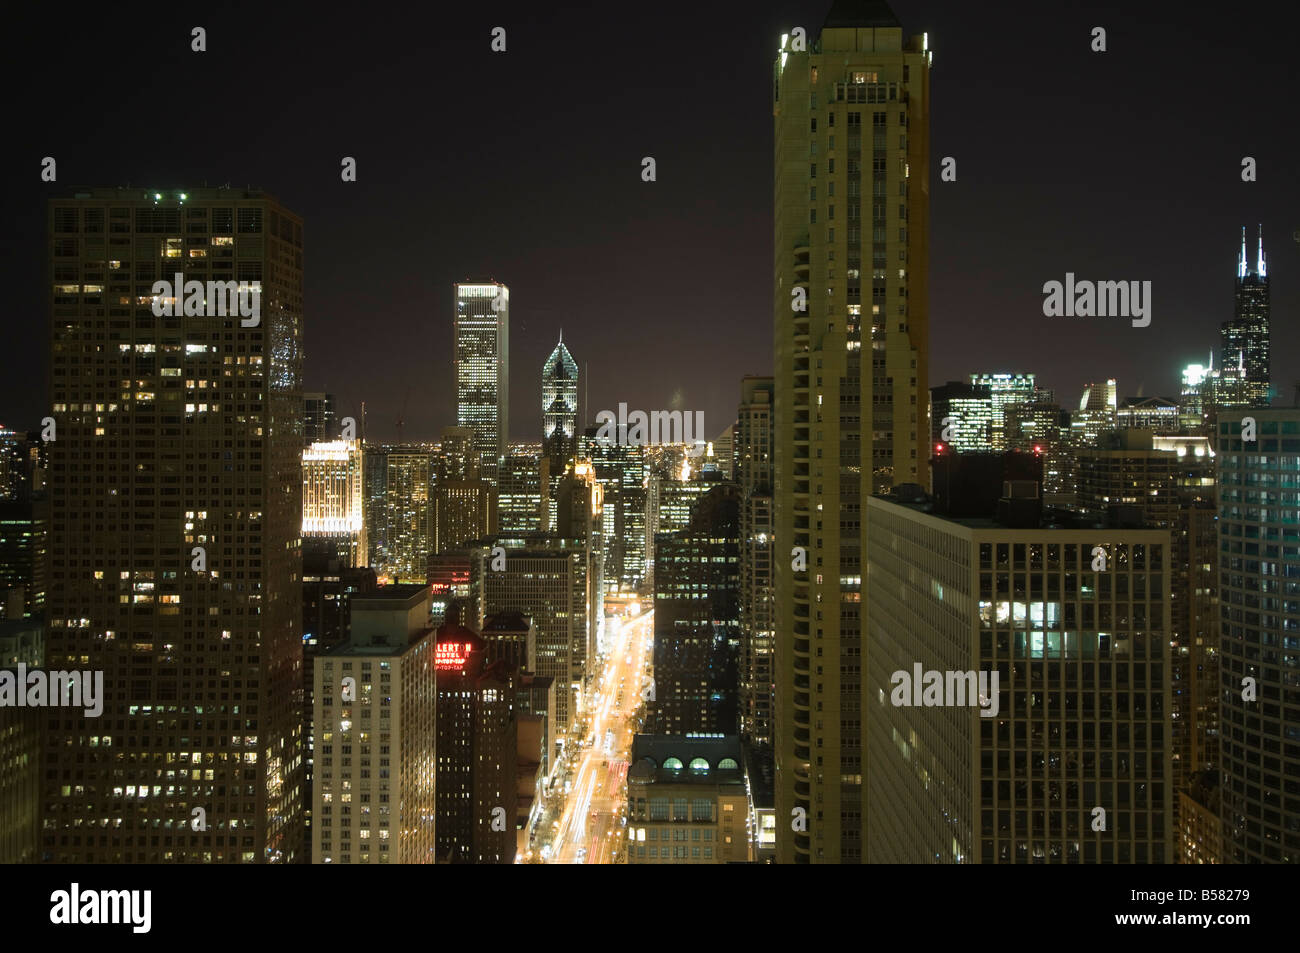 Photo de nuit de la Magnificent Mile prises à partir de la Hancock Building, Chicago, Illinois, États-Unis d'Amérique, Amérique du Nord Banque D'Images